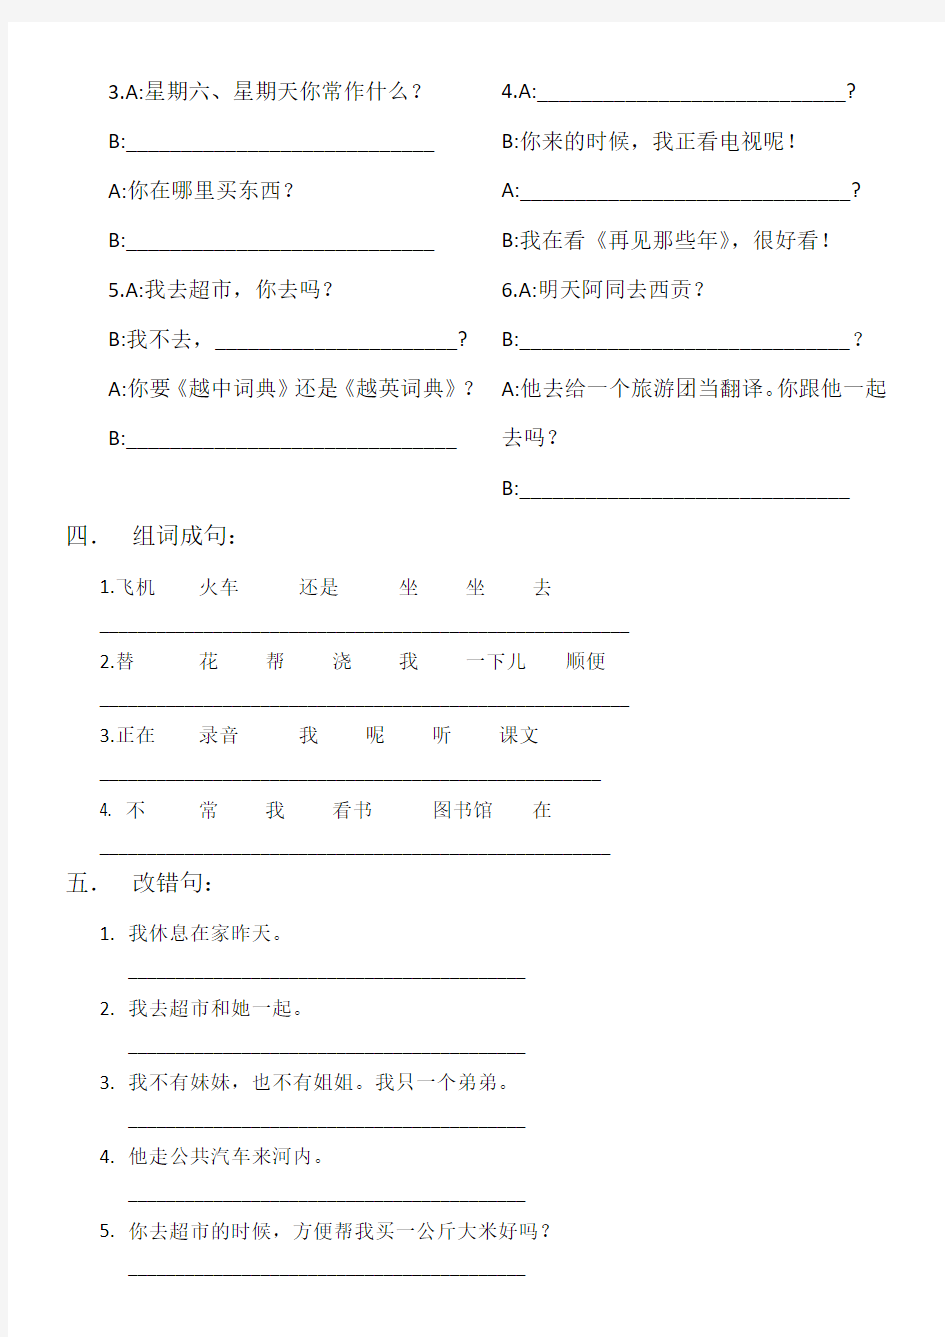 汉语教程第一册下16-18复习